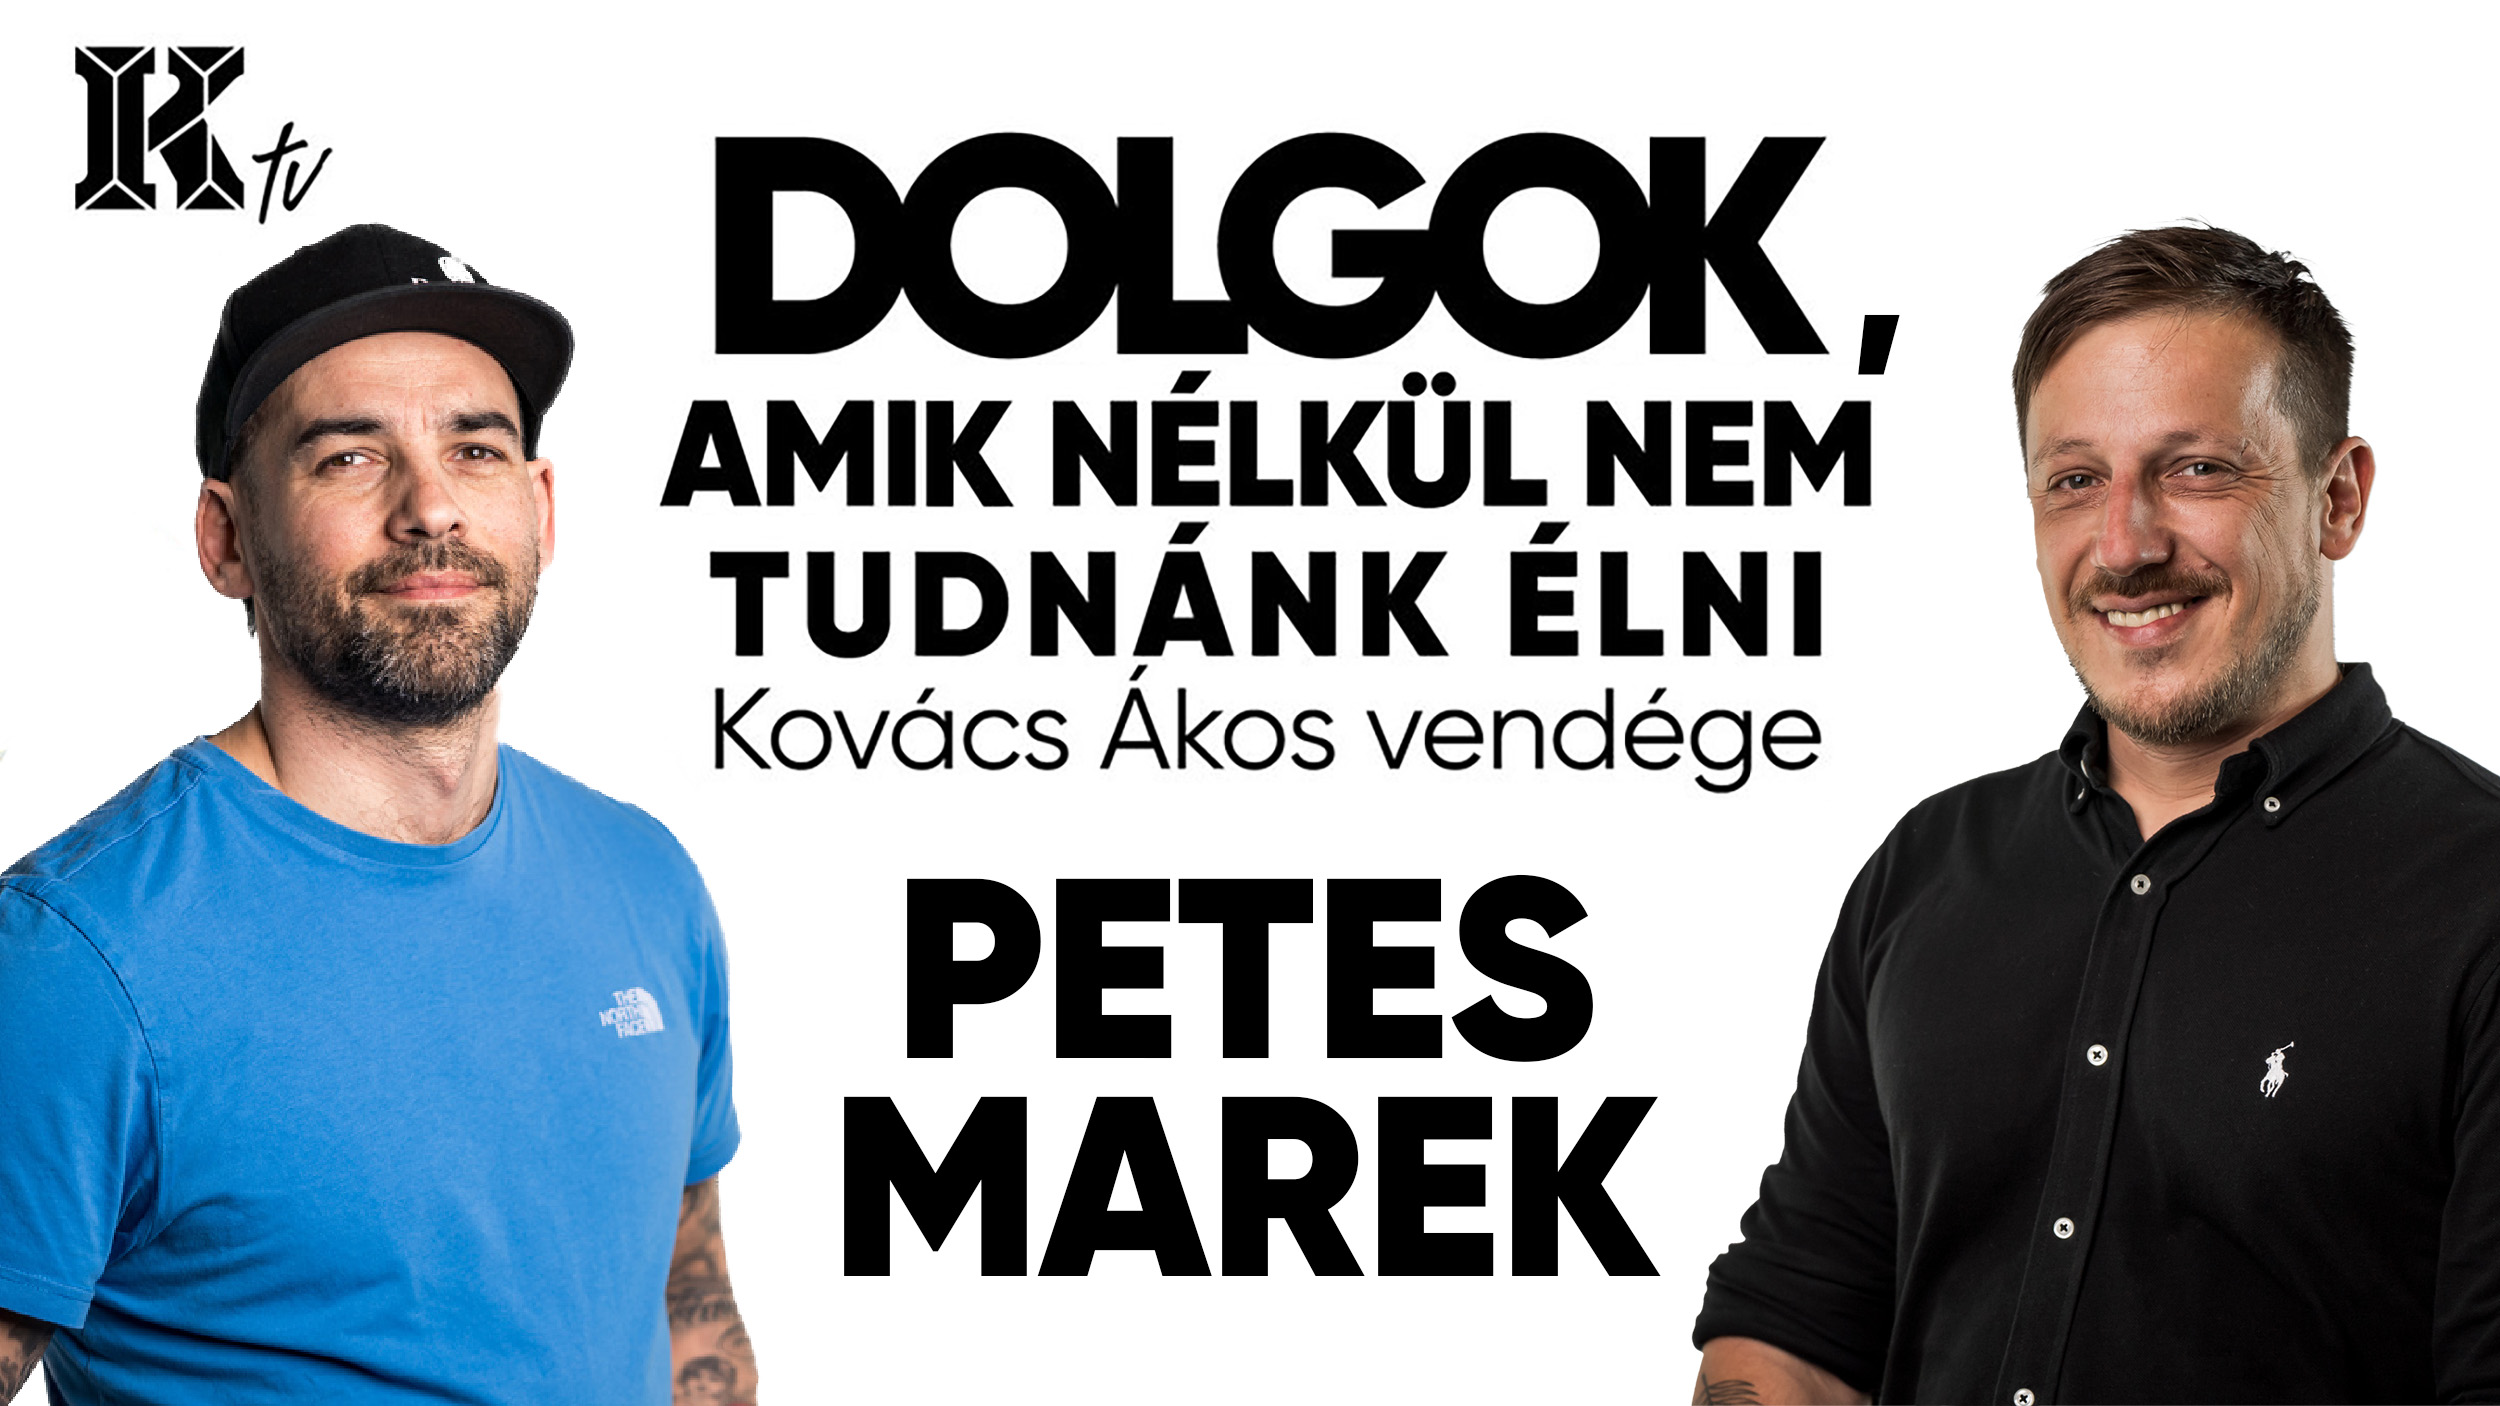 Petes Marek,Dolgok,Kedvencek,Szabadidő,Hobbi